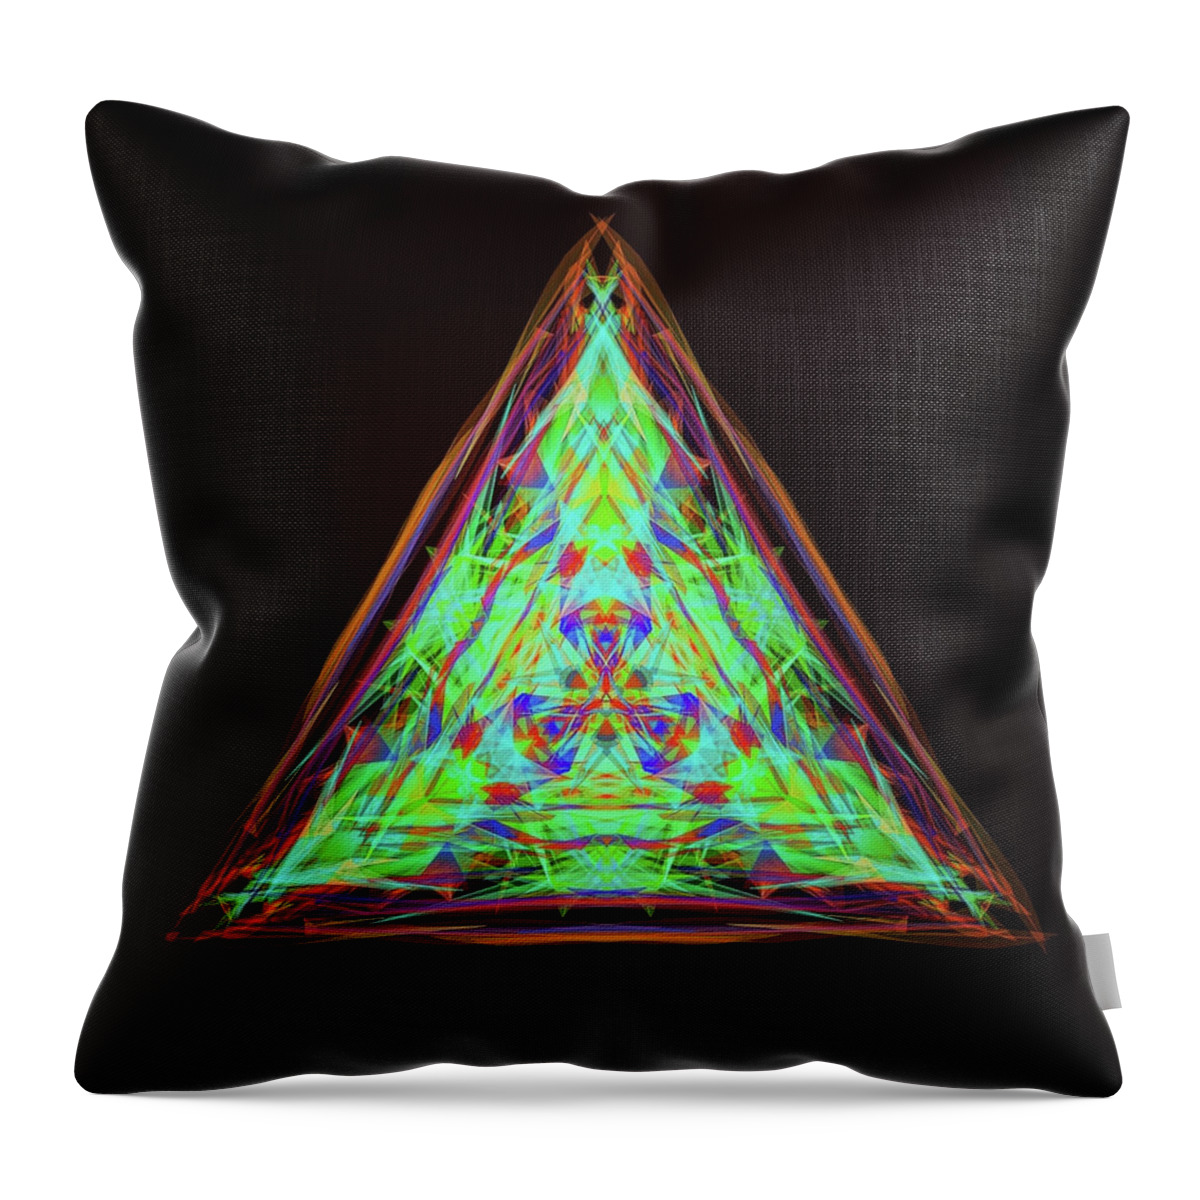 Kosmic Pyramid Of Osiris Throw Pillow featuring the digital art Kosmic Pyramid of Osiris by Michael Canteen